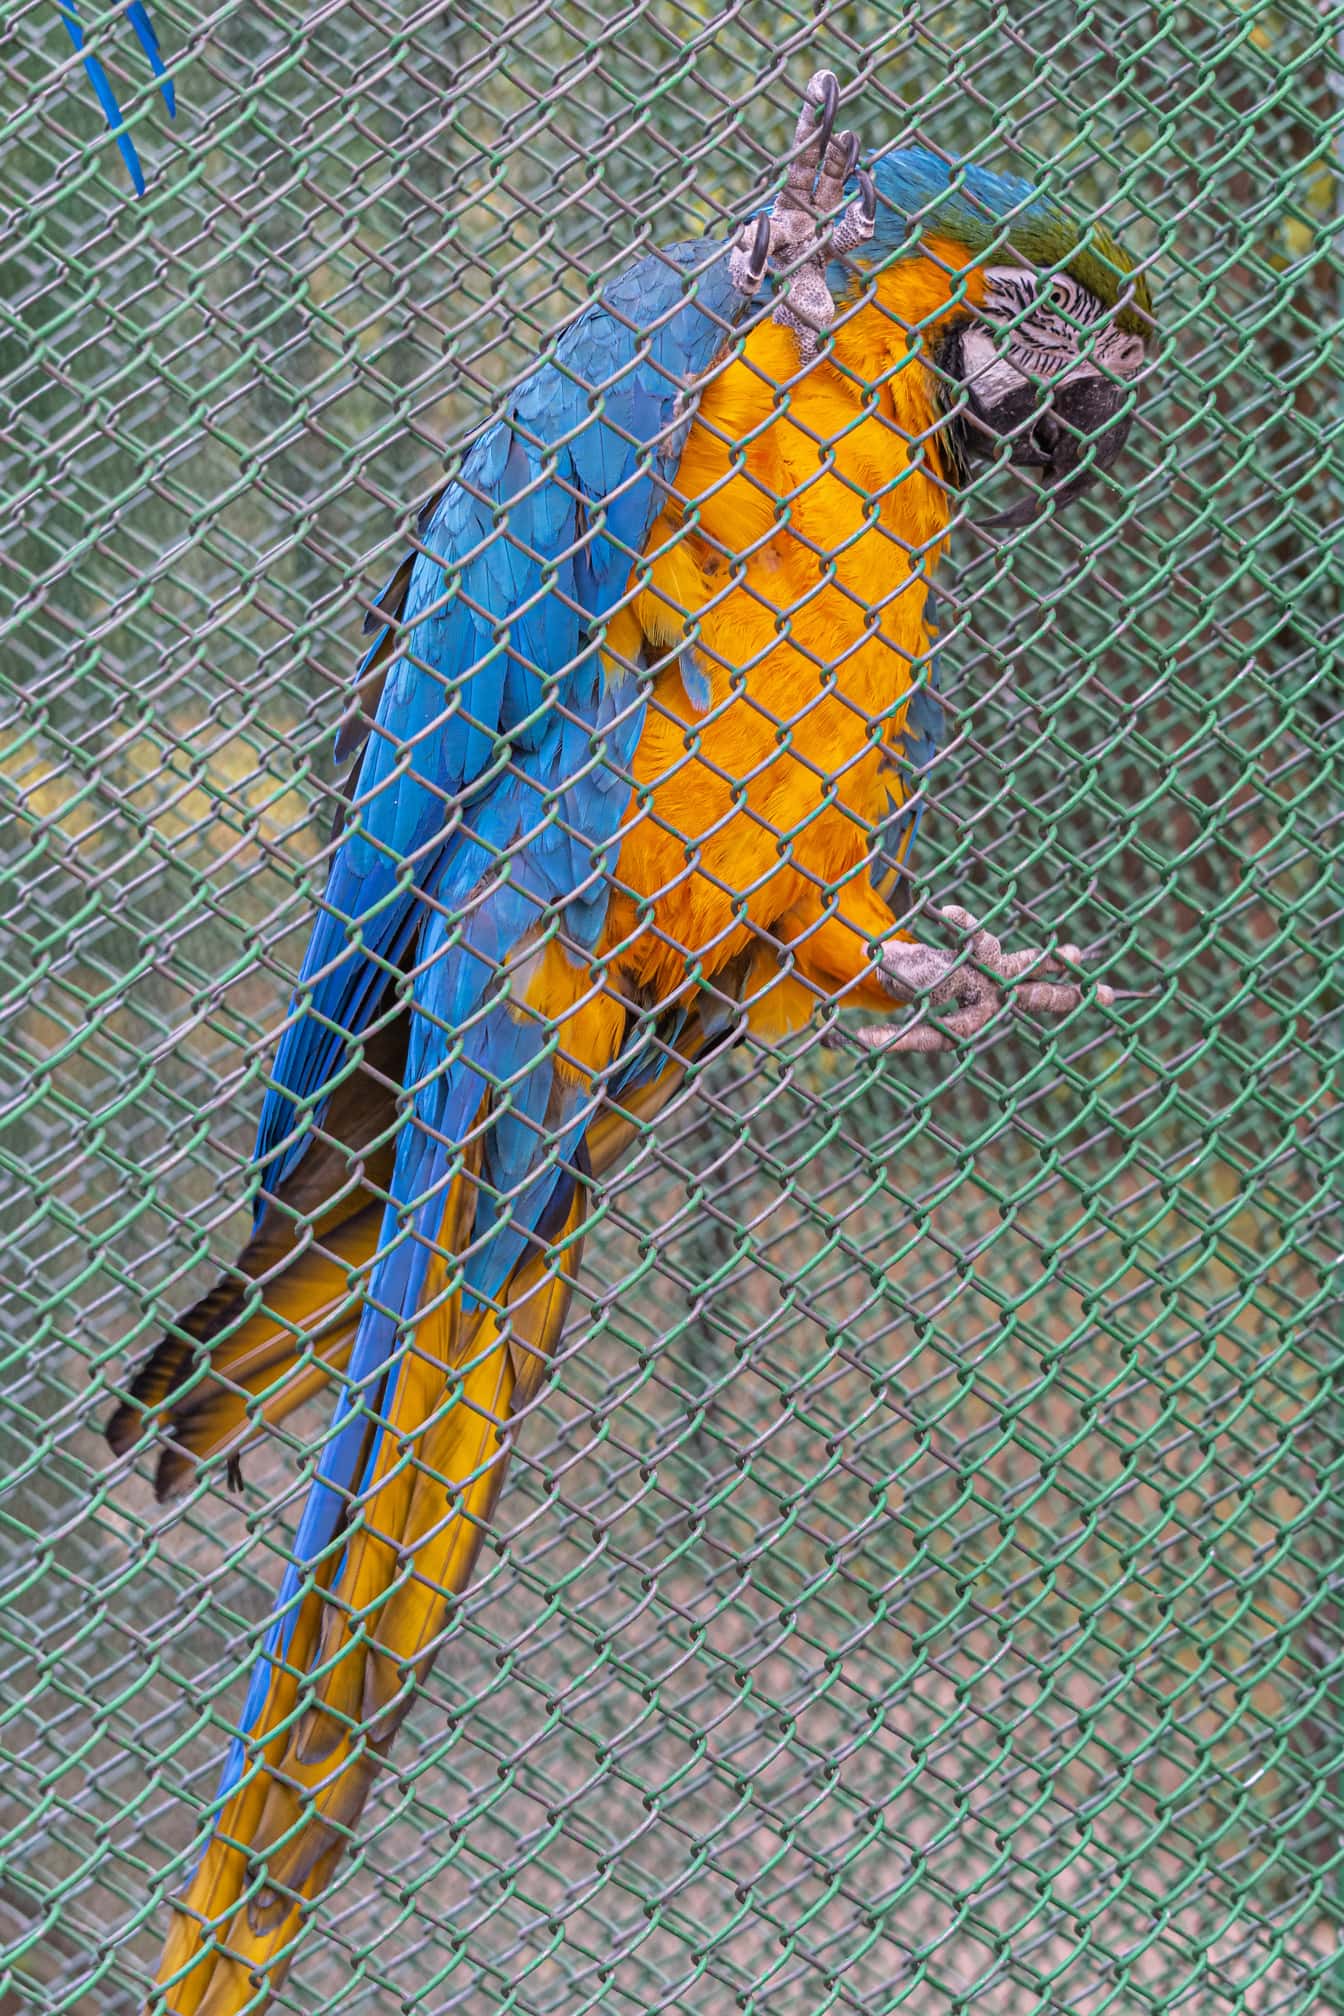 Sininen ja oranssi keltainen ara (Ara ararauna) papukaijalintu häkin aidalla